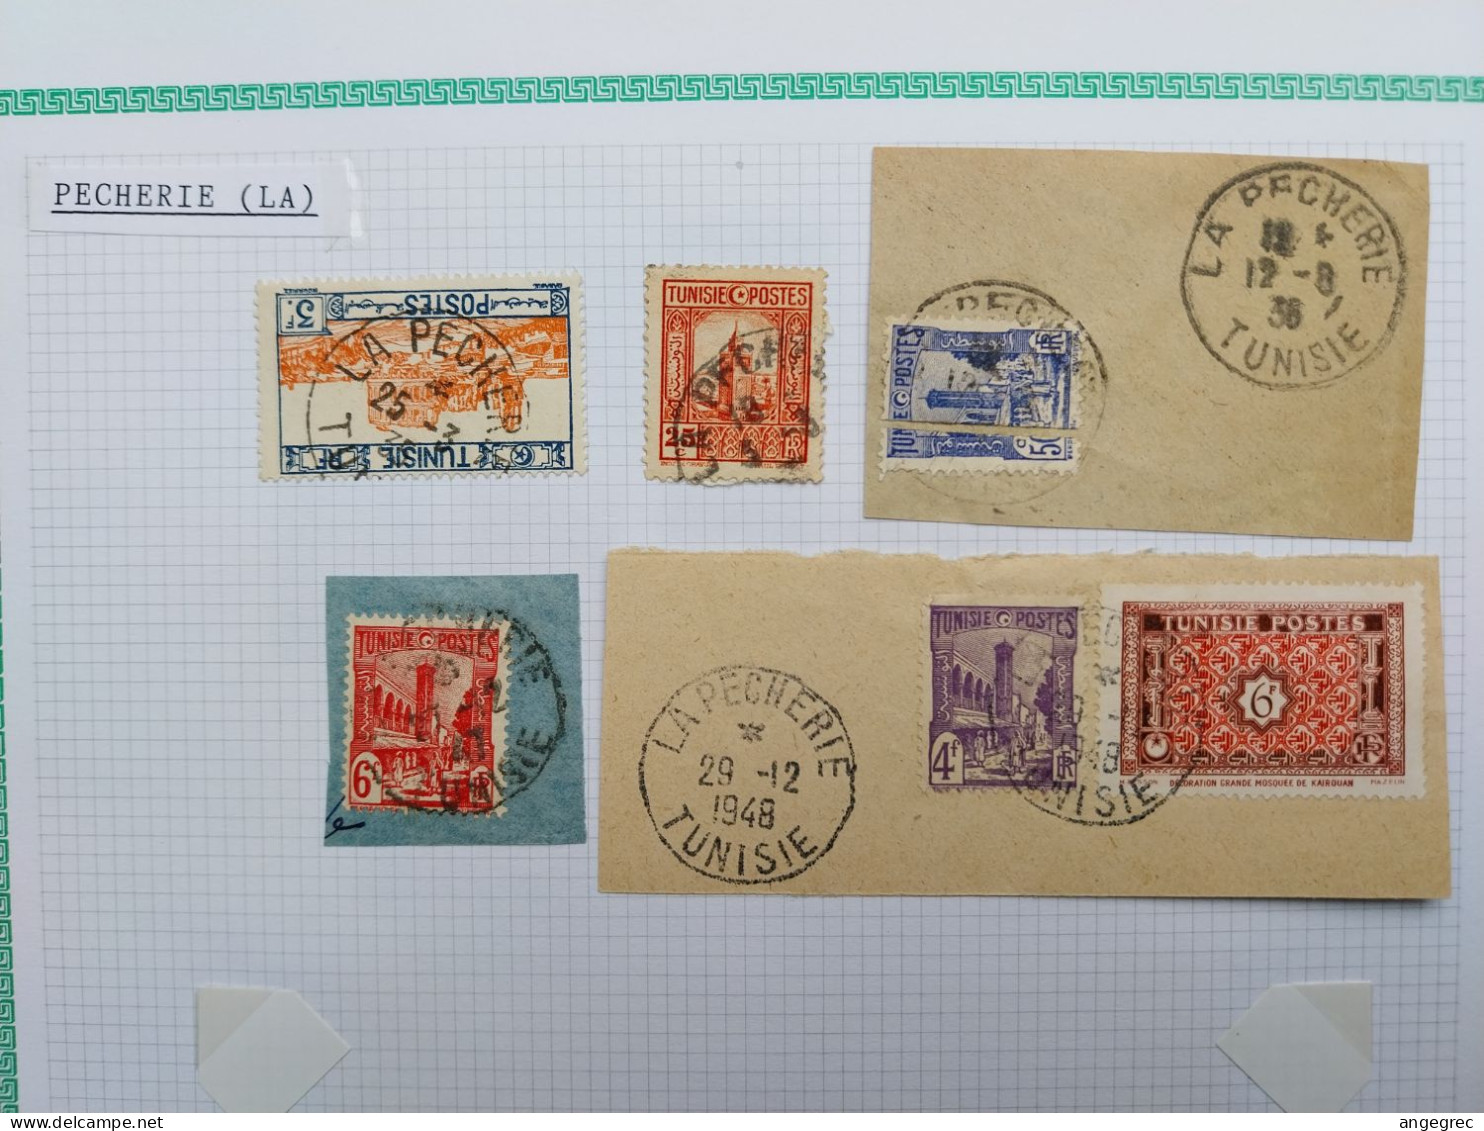 Tunisie Lot Timbre Oblitération Choisies Pecherie (La)  Dont Fragment à Voir - Used Stamps